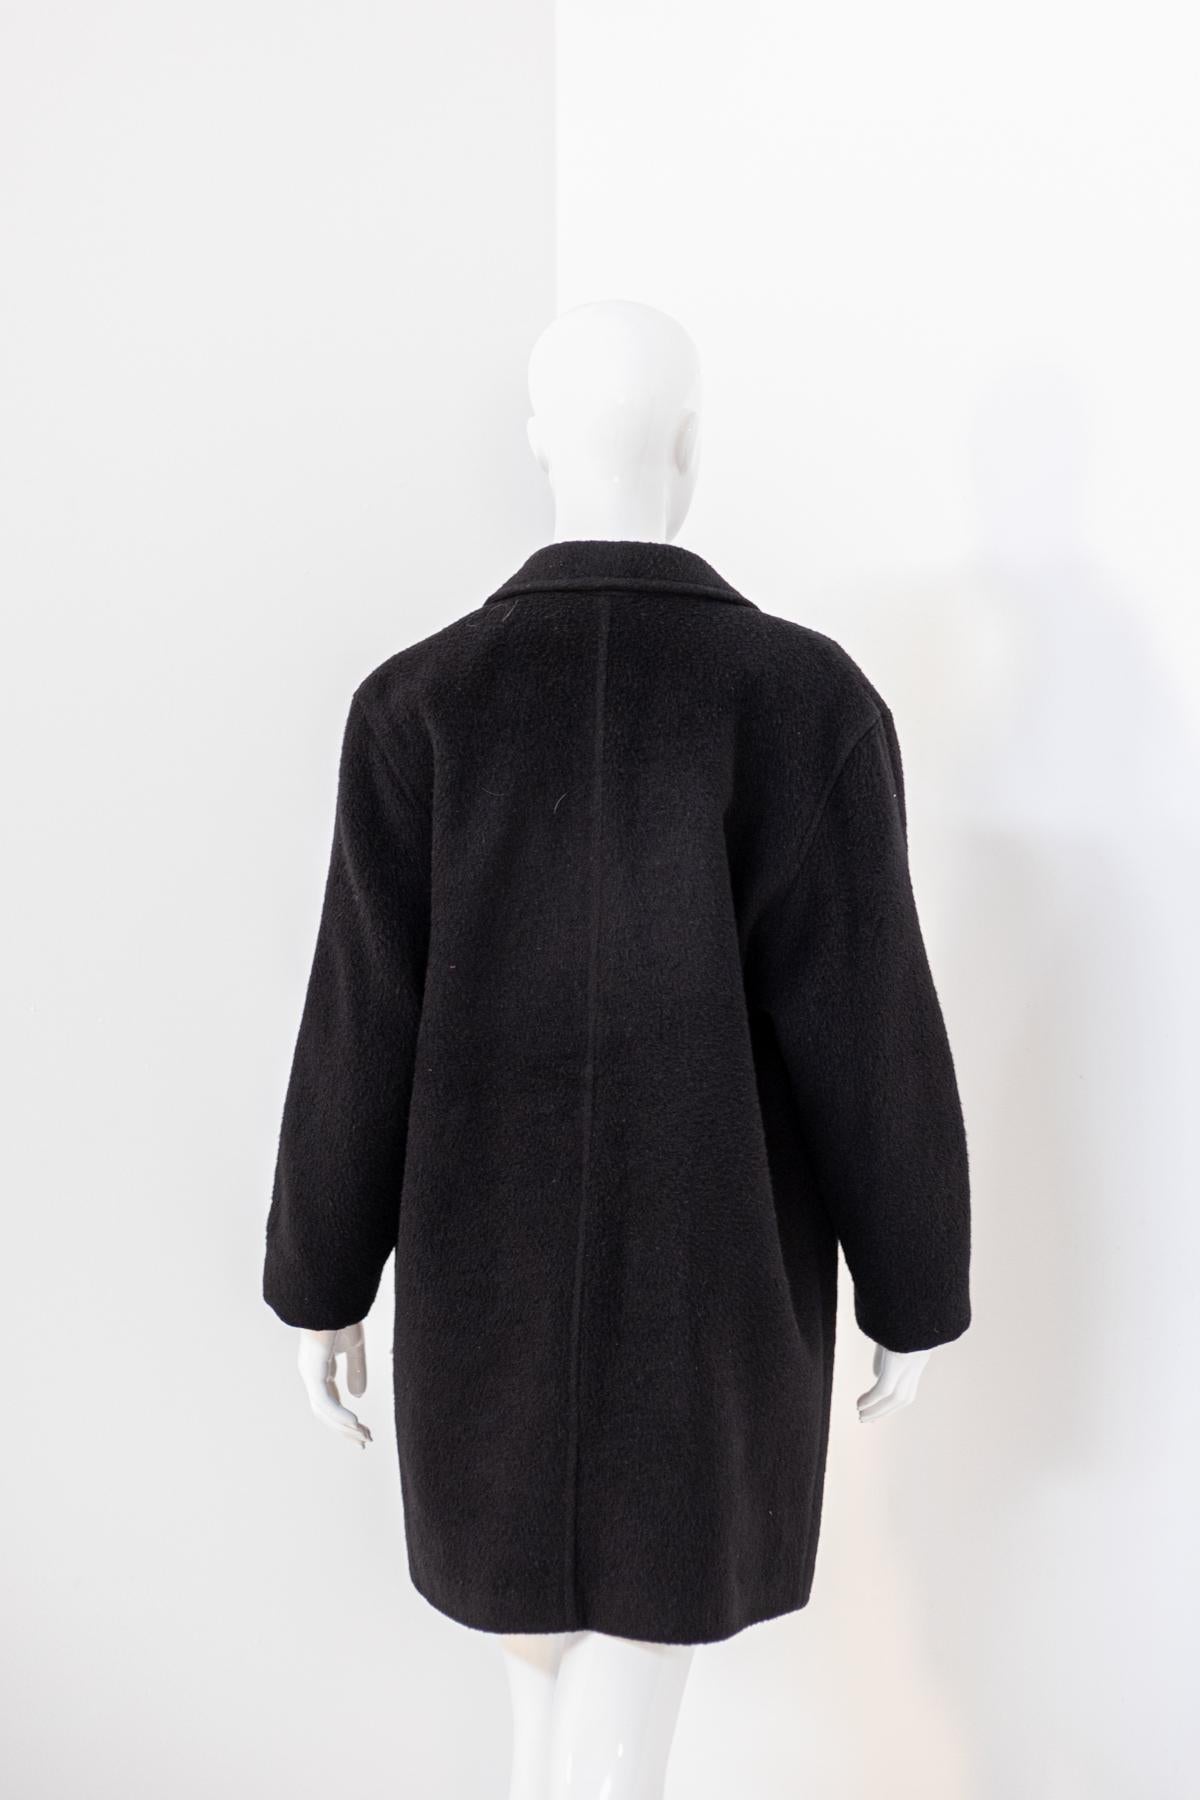 Alpaca Vintage Black Wool Coat For Sale 2